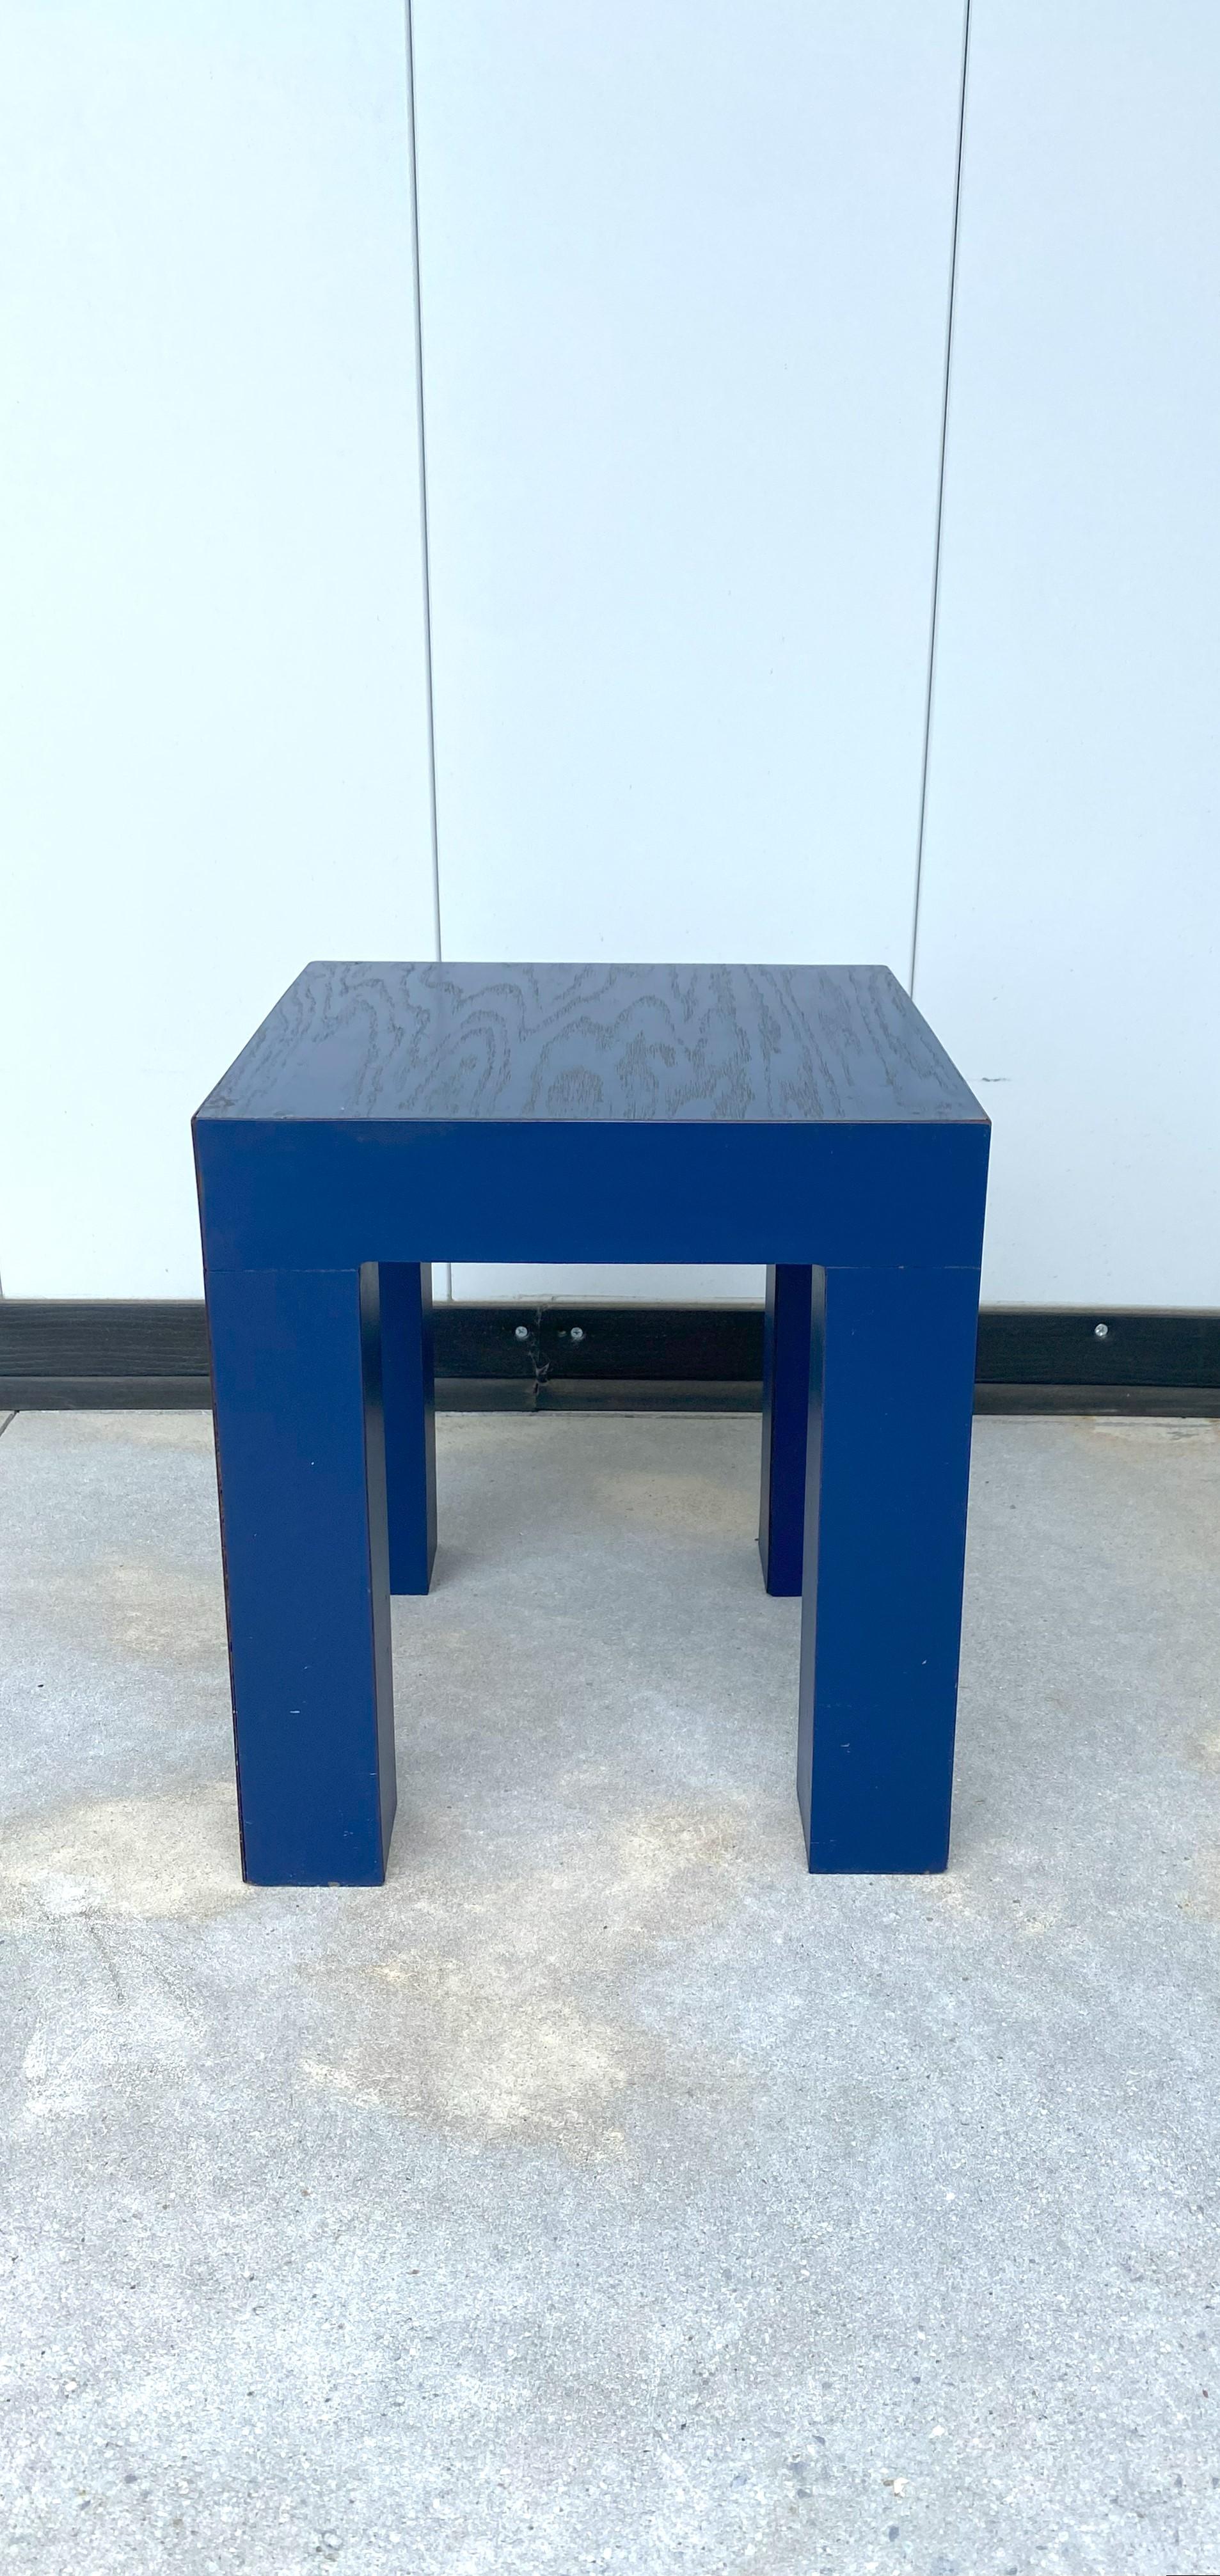 Petite table d'appoint/de chevet/à boire bleu roi, période postmoderne, style Memphis, d'après le designer Marco Zanini, vers la fin du XXe siècle, années 1980. Table monochrome en bois et placage de stratifié bleu. Le plateau de la table est en